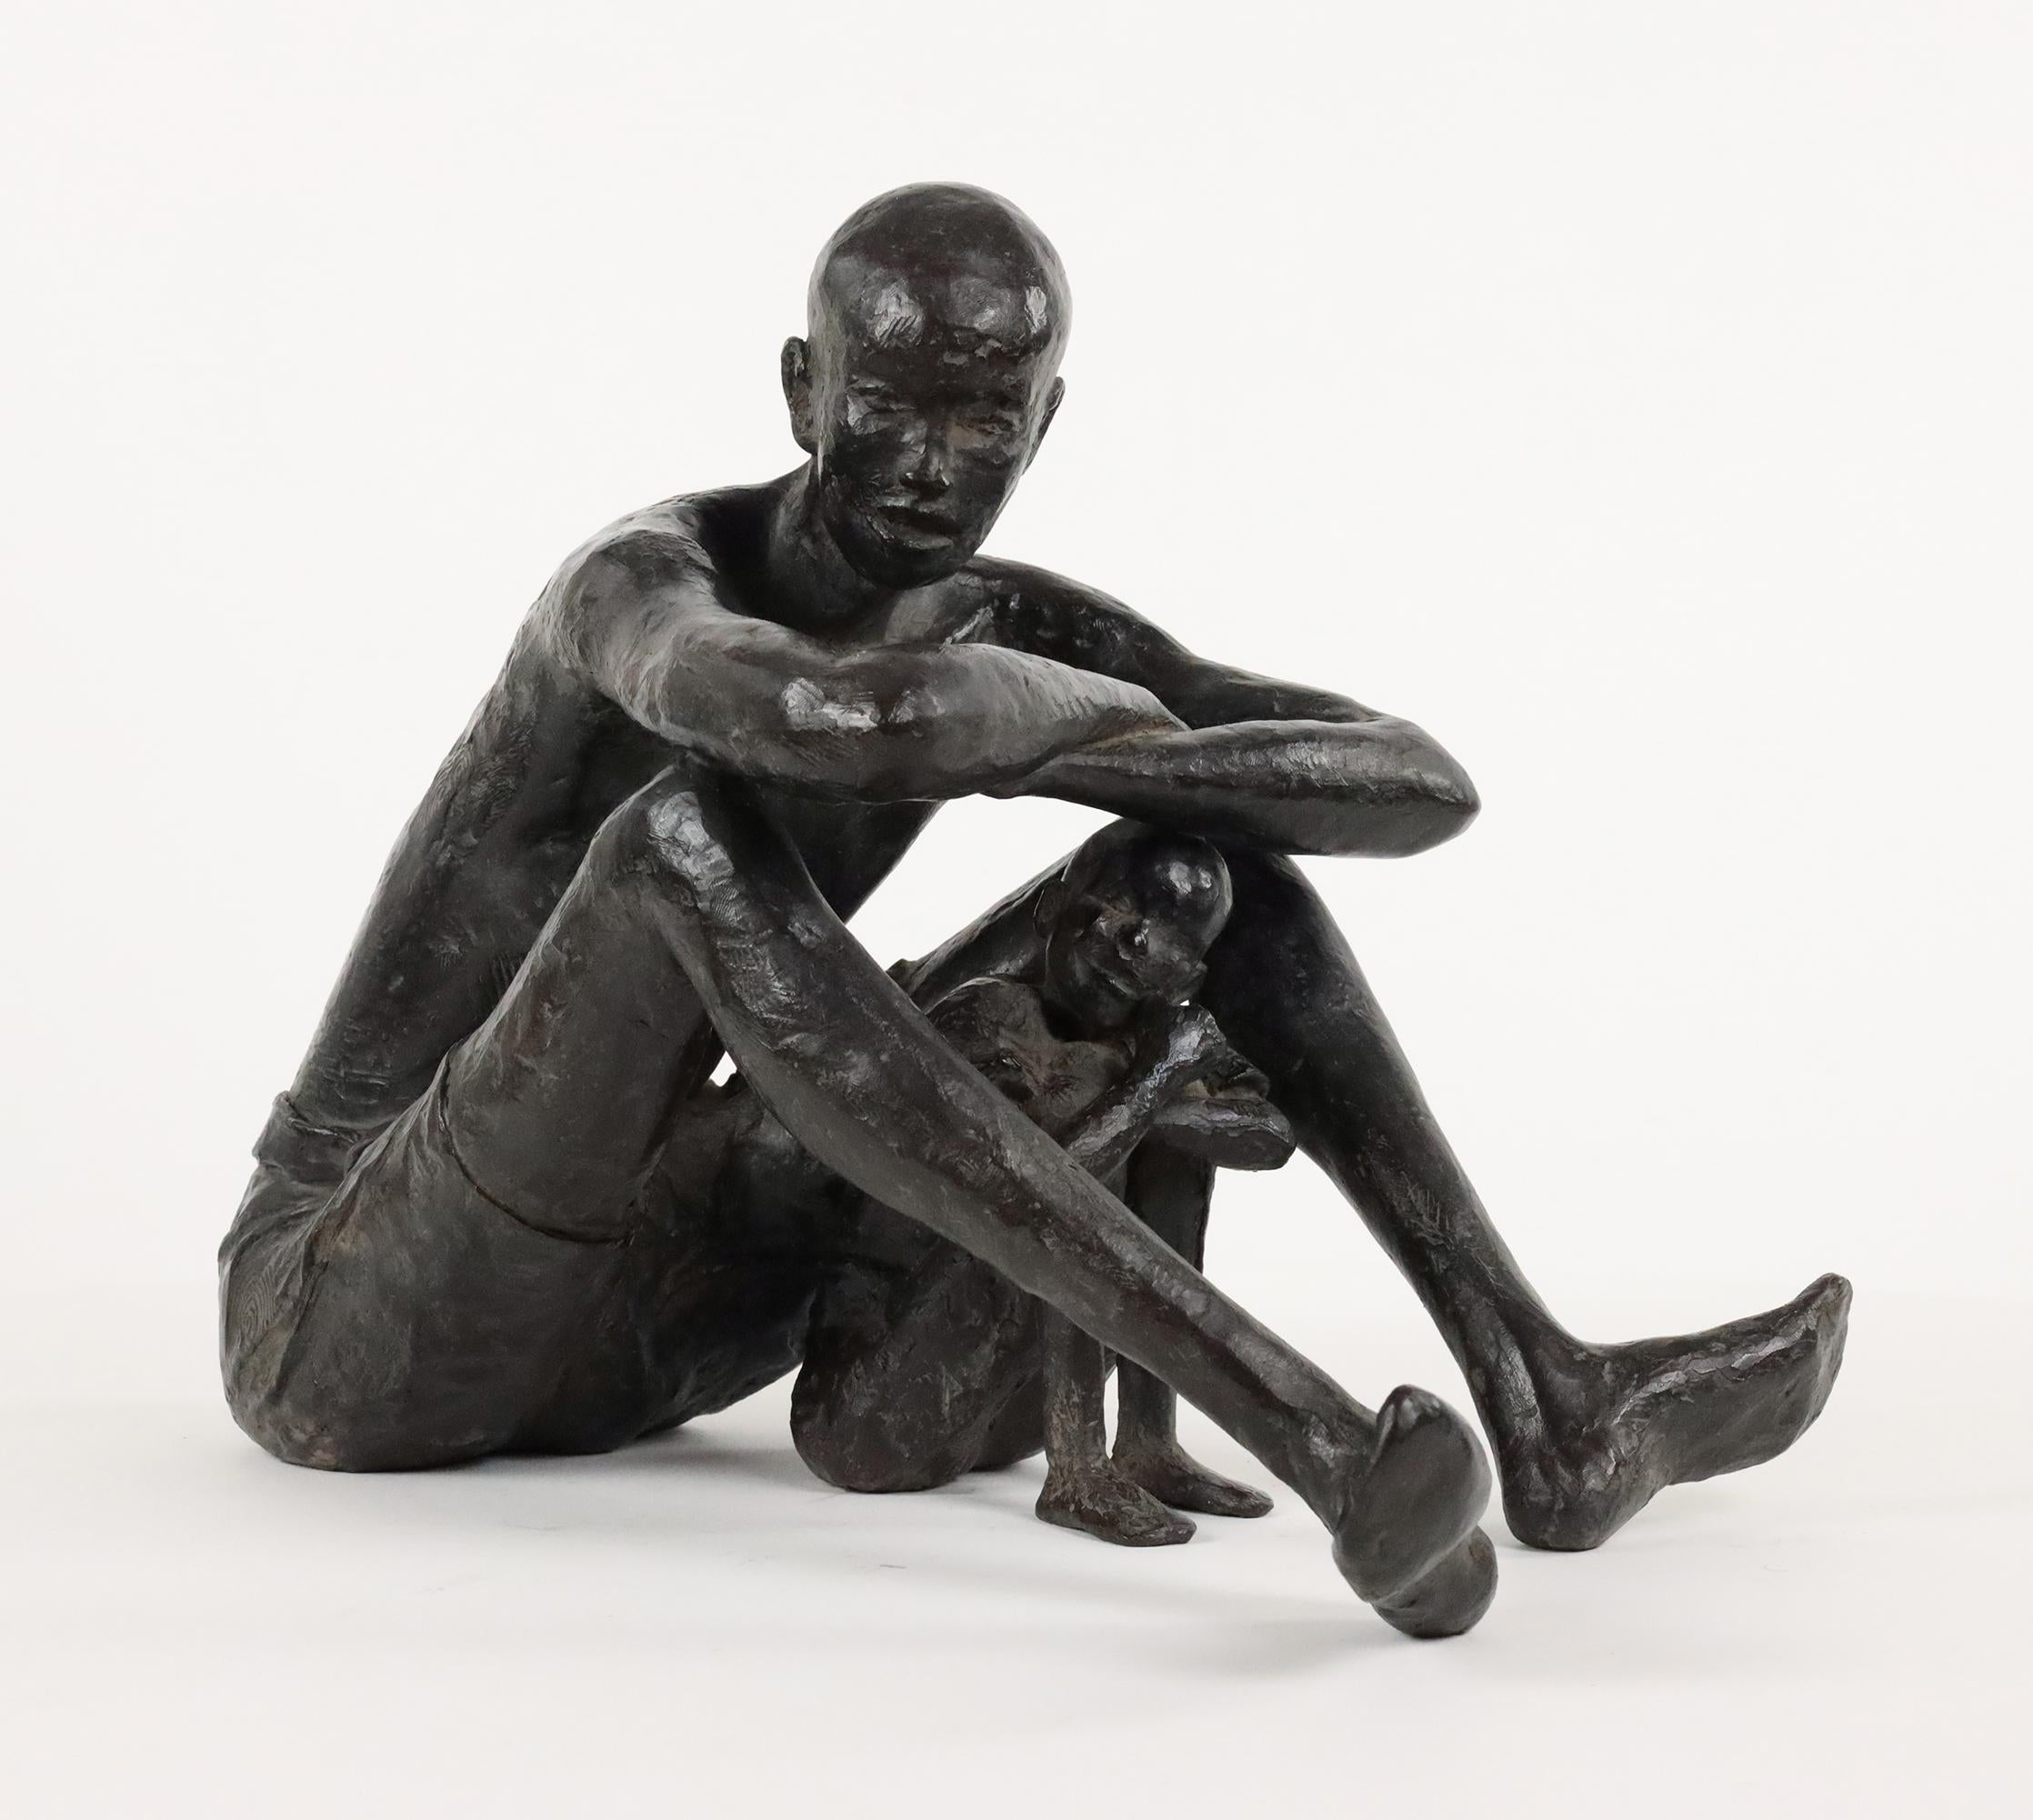 À l'ombre d'être aimé est une sculpture en bronze de l'artiste contemporaine française Marine de Soos, dont les dimensions sont de 32,5 × 25,5 × 39,5 cm (12,8 × 10 × 15,6 in). 
La sculpture est signée et numérotée, elle fait partie d'une édition